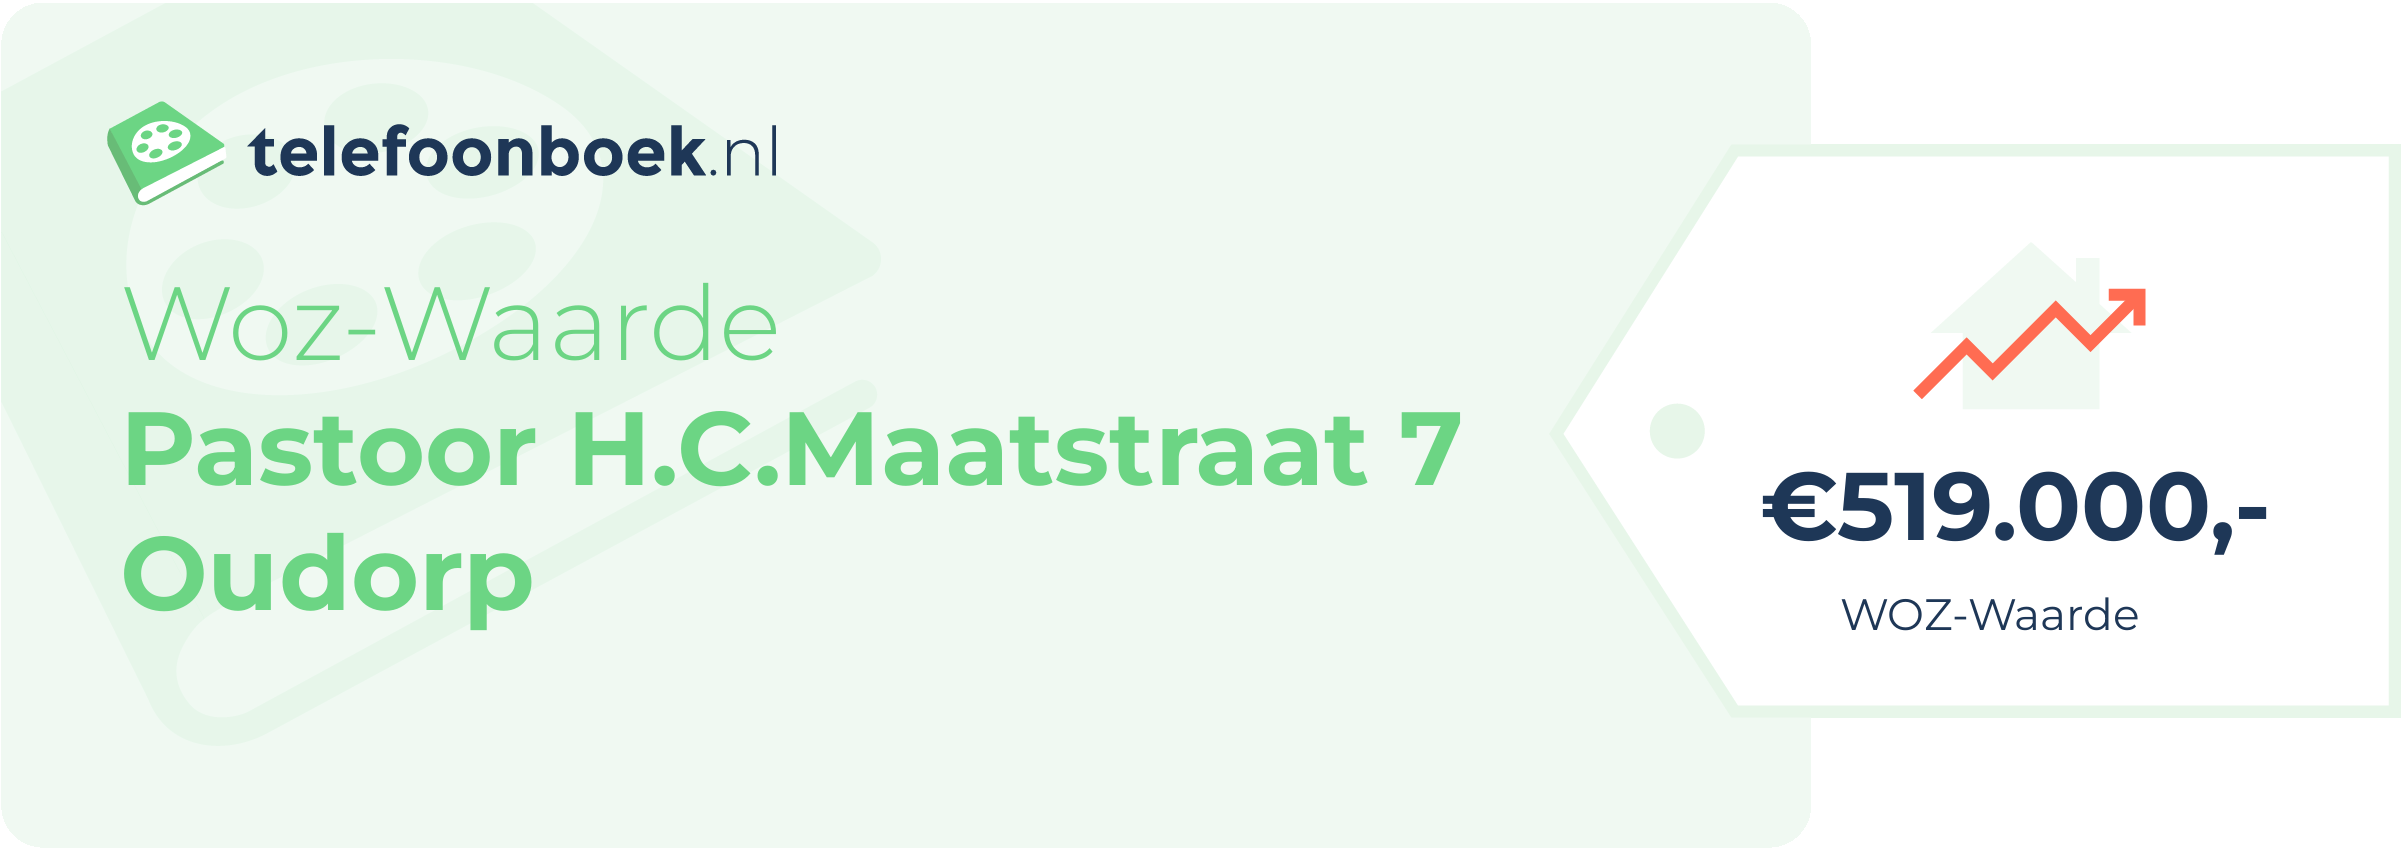 WOZ-waarde Pastoor H.C.Maatstraat 7 Oudorp